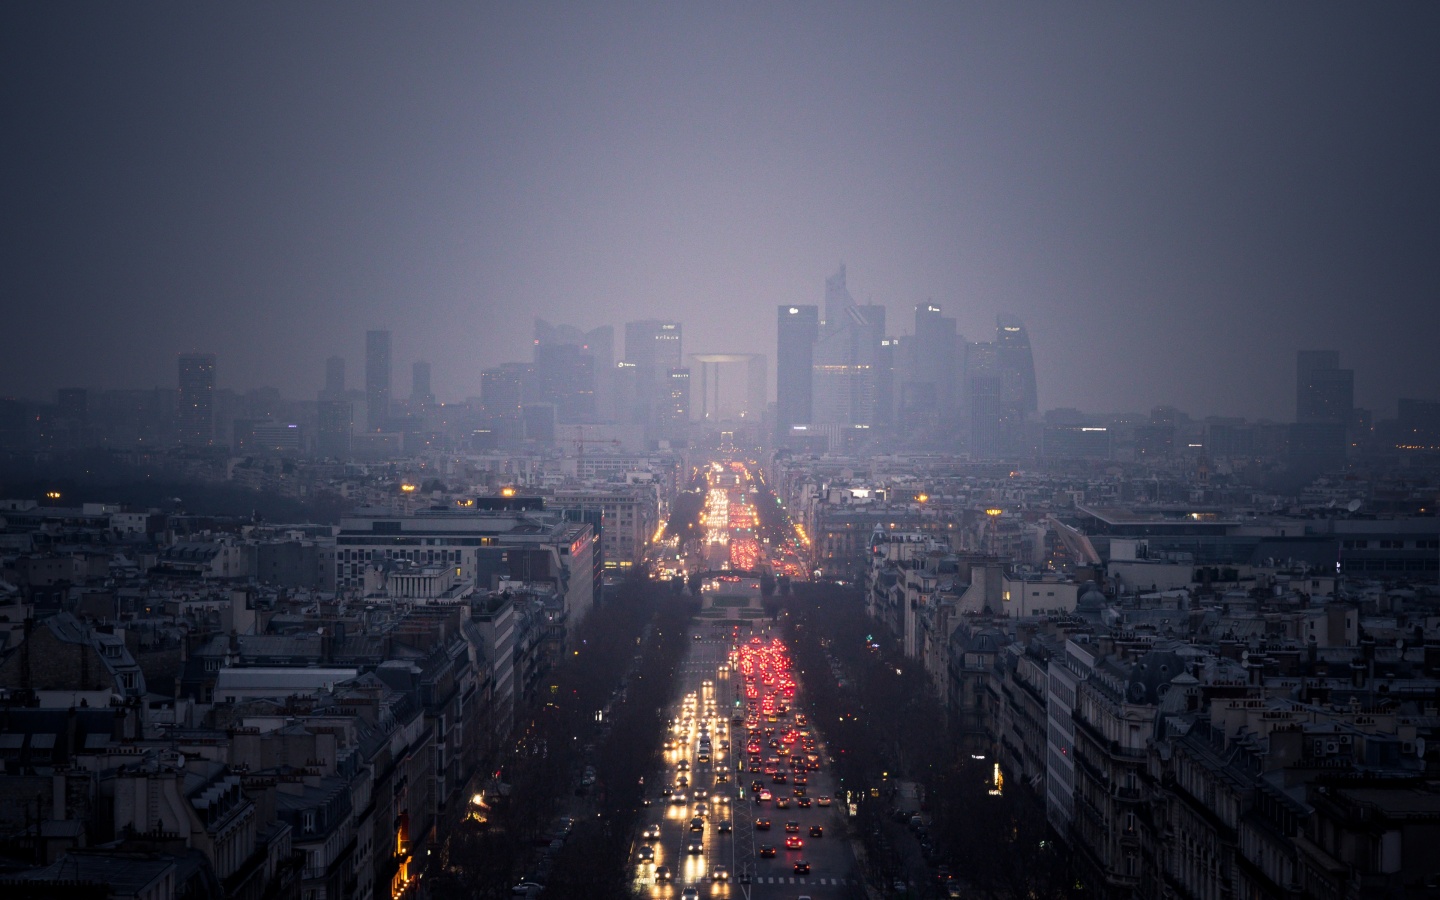 Ночной город в тумане обои